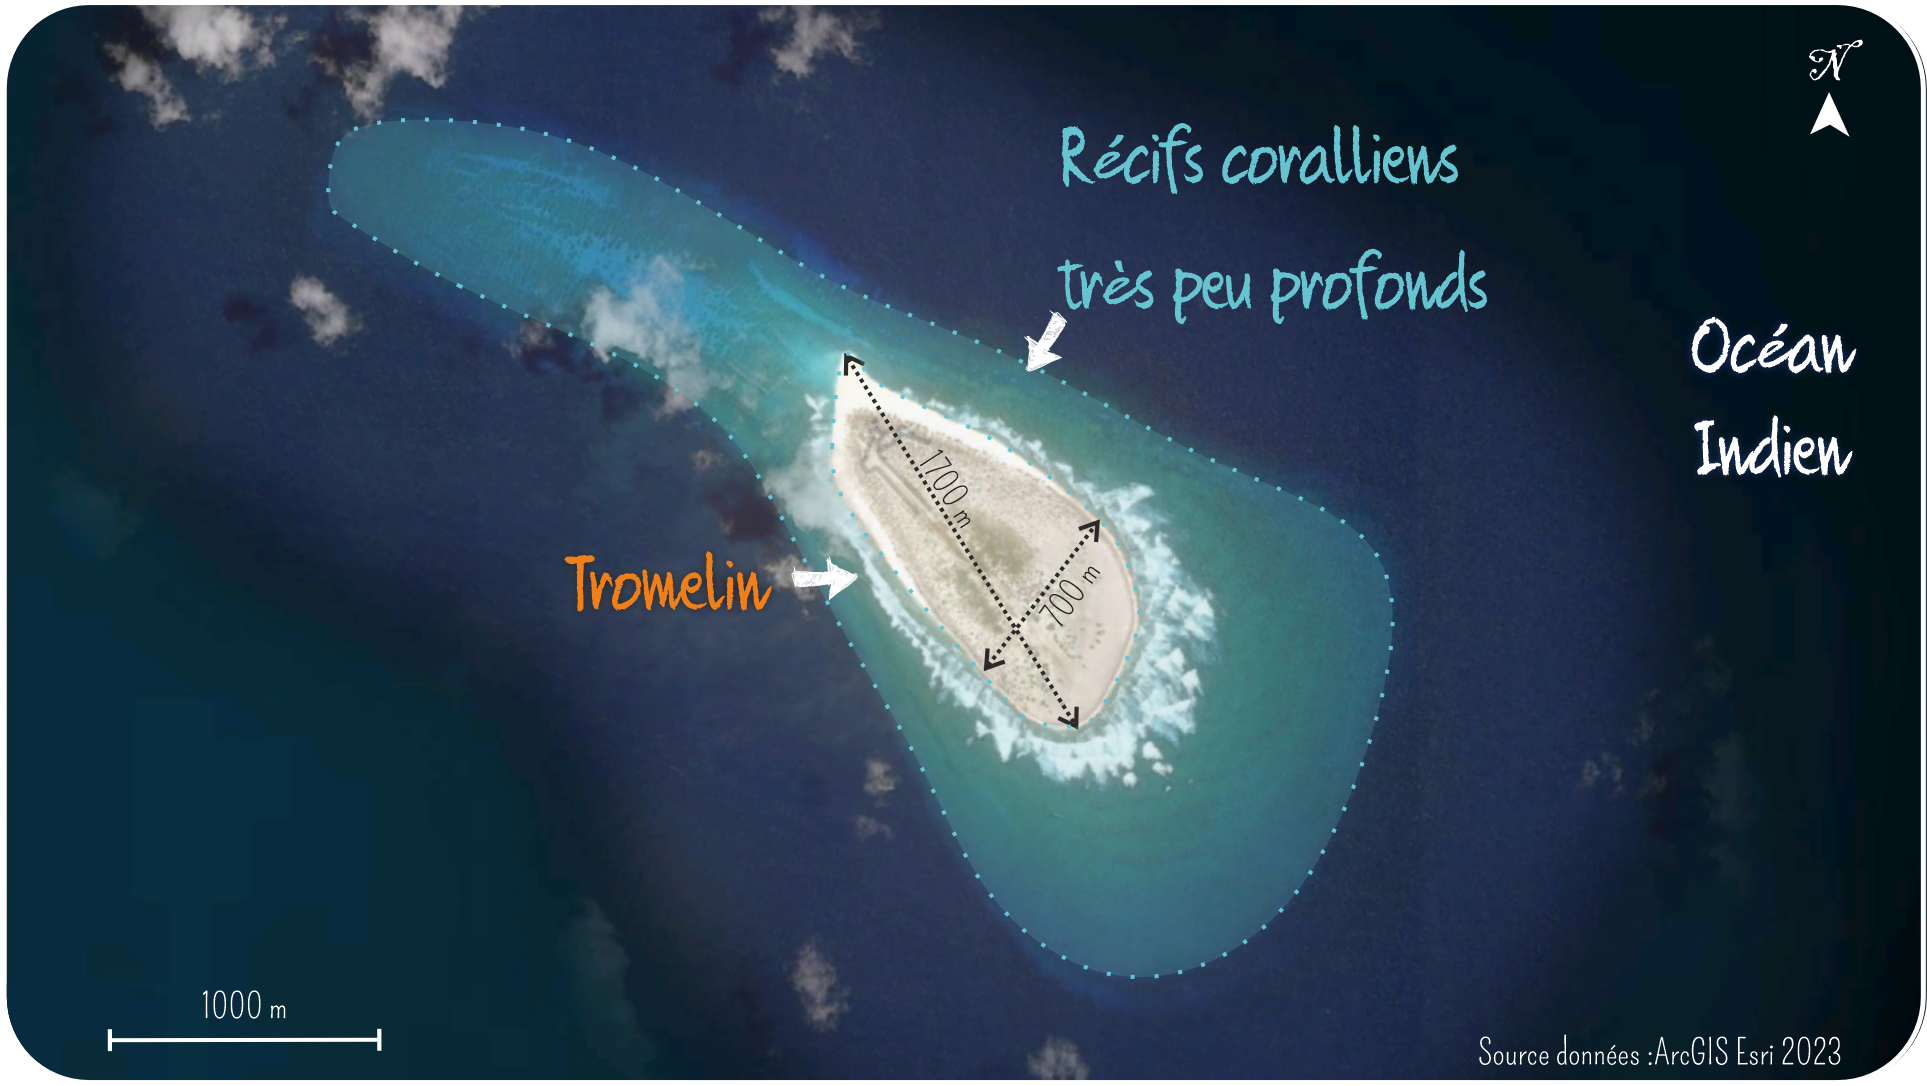 L'île Tromelin est entourée de récifs coralliens peu profonds